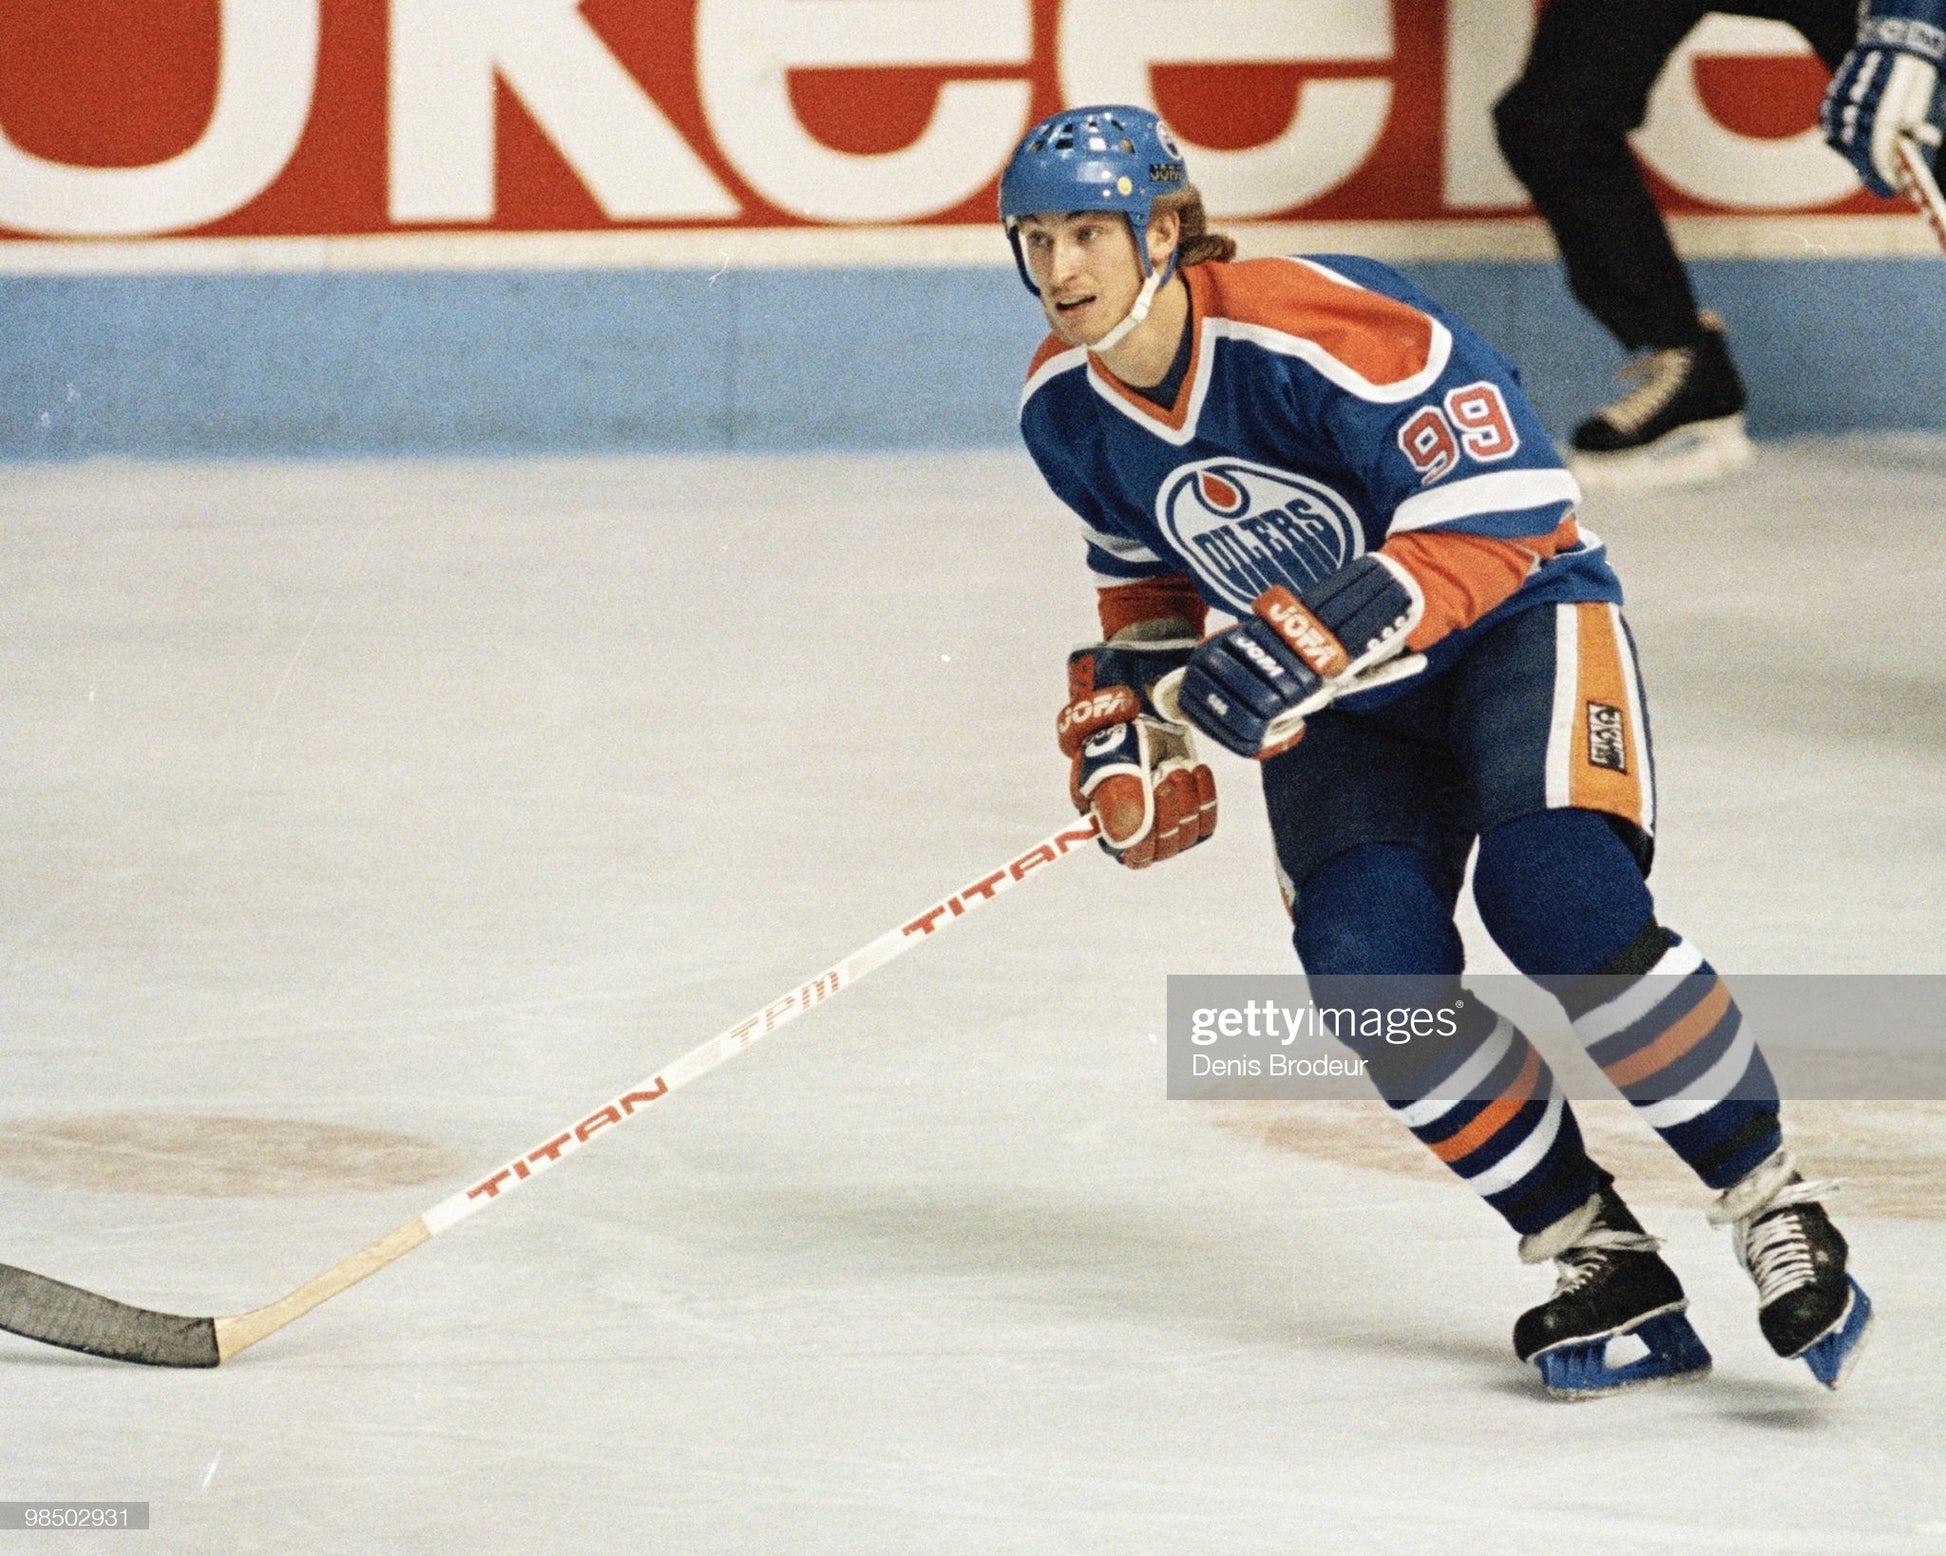 1980's Edmonton Oilers Stanley Cup Era Practice Jersey